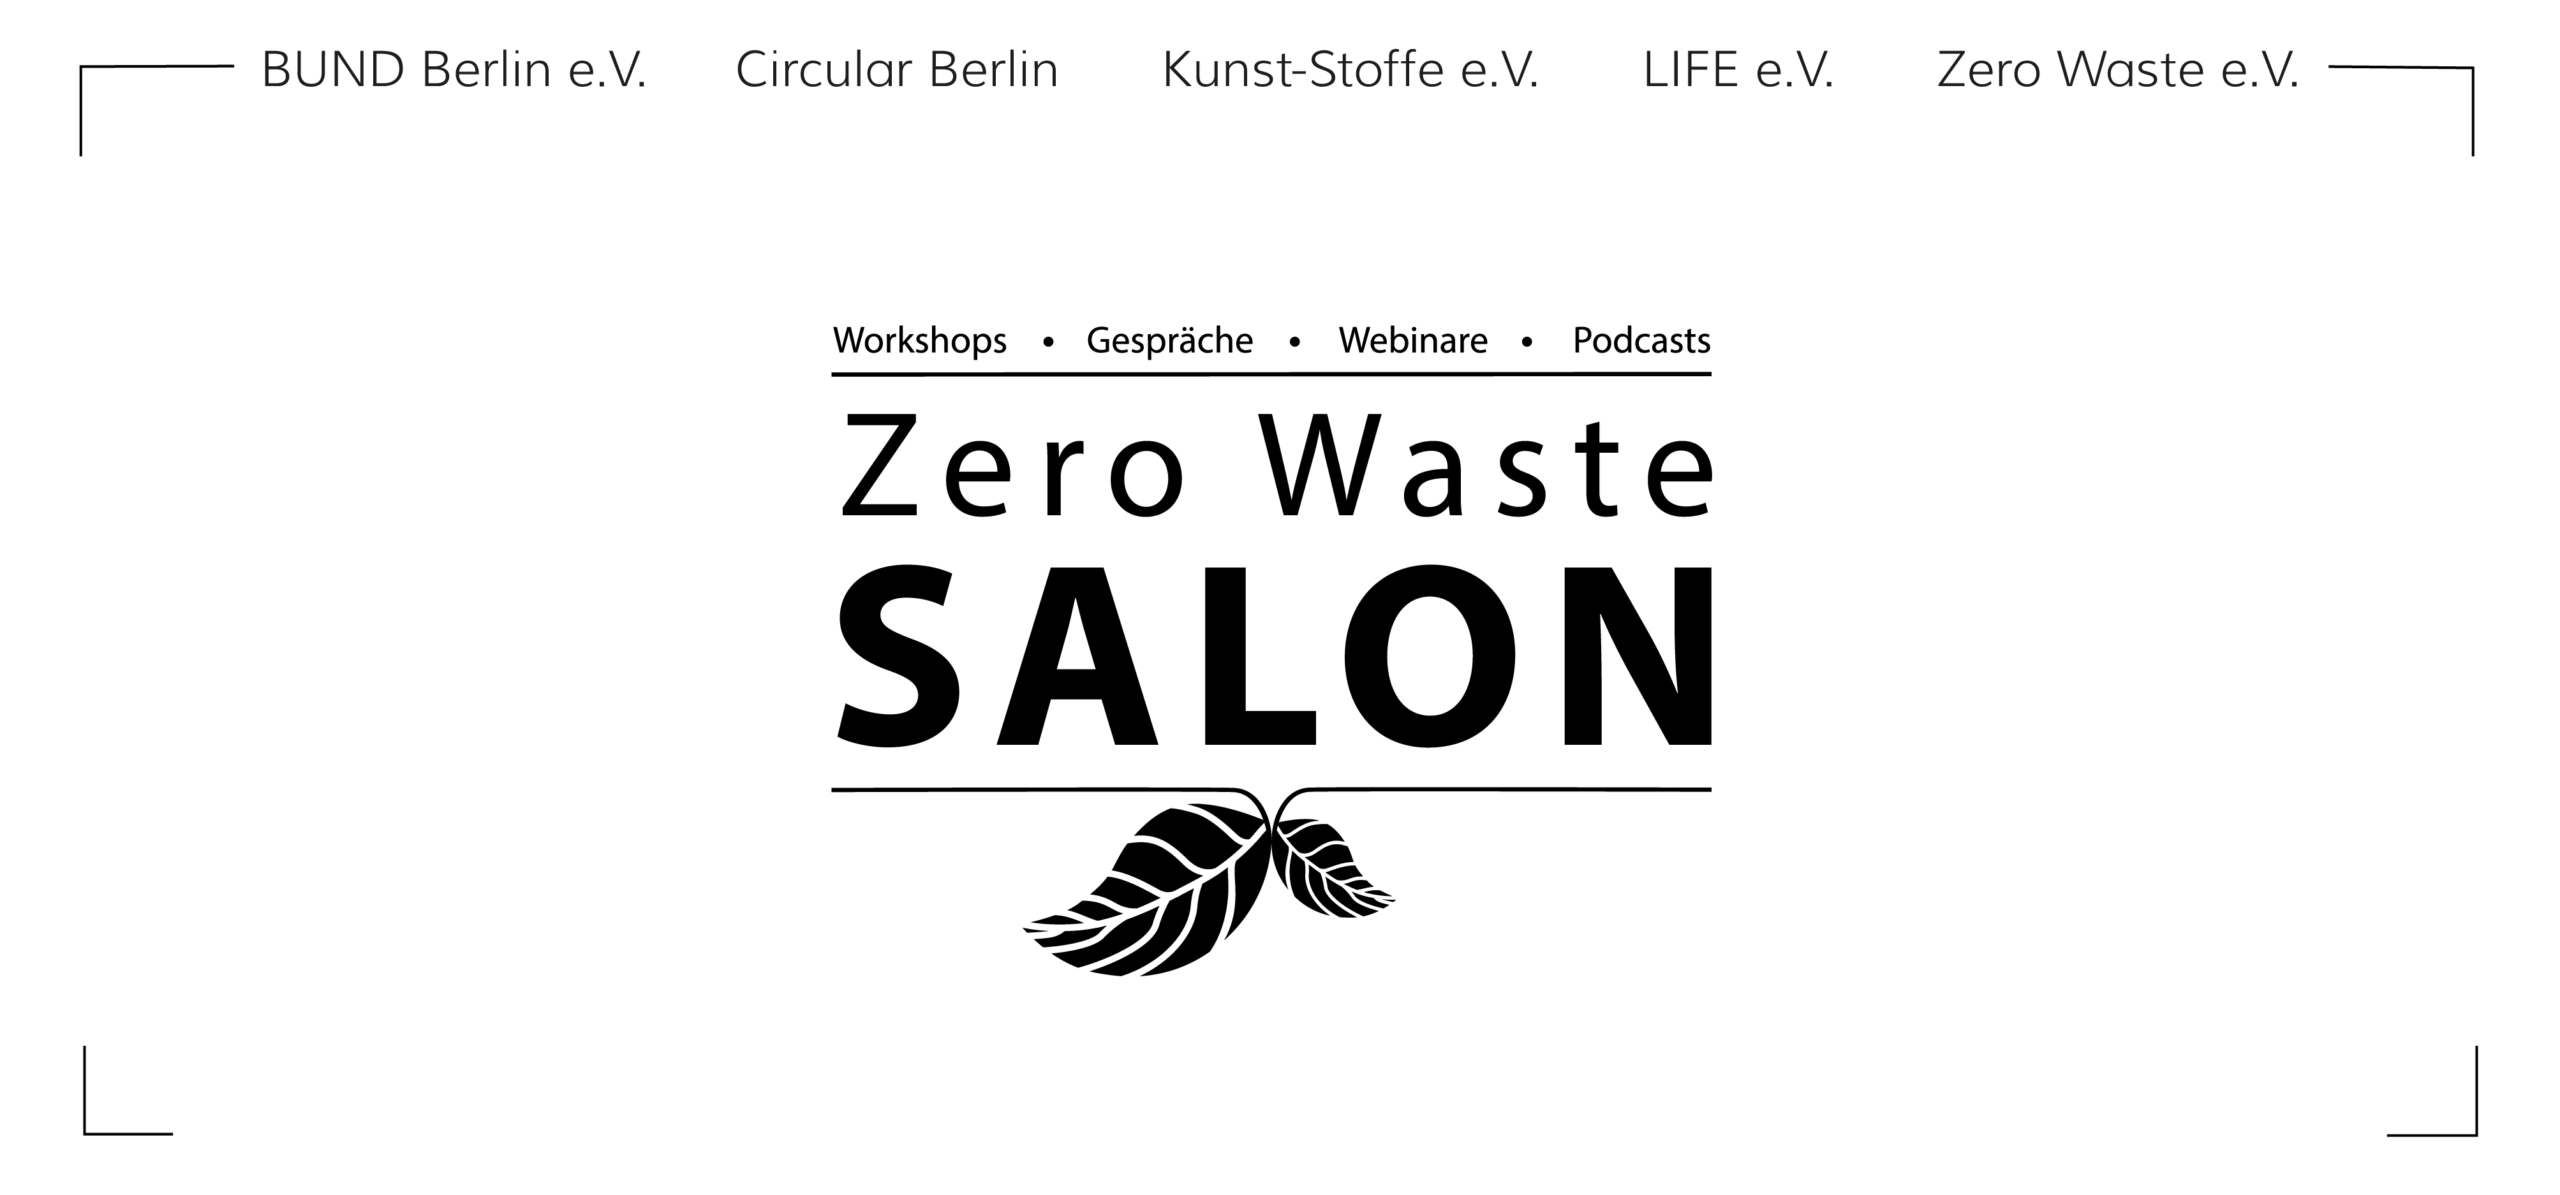 Zero Waste Salon